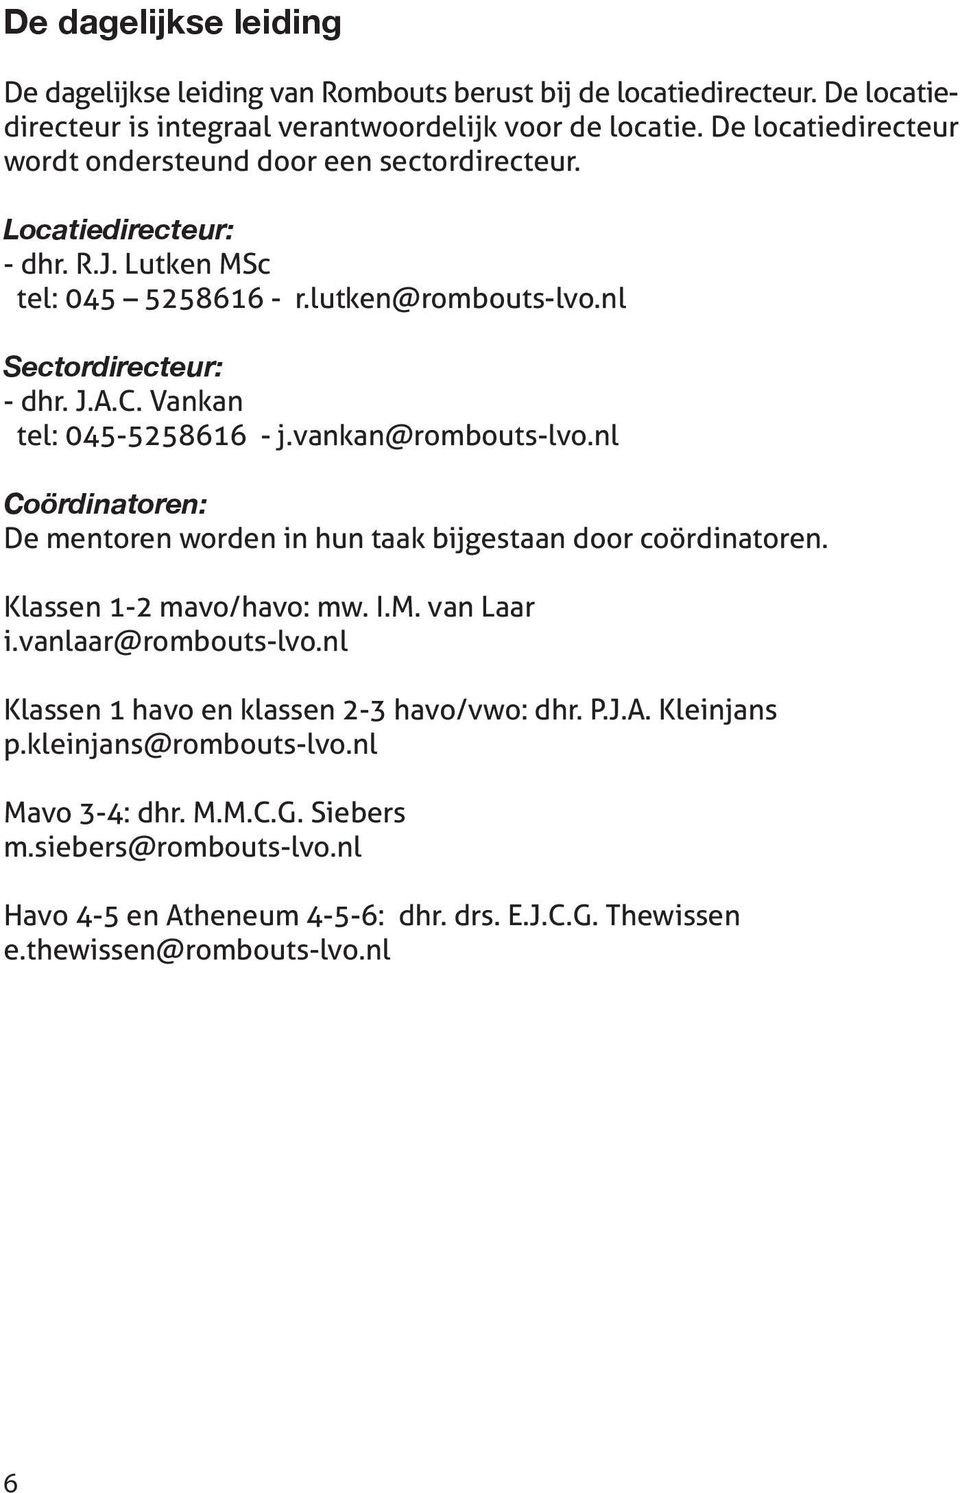 Vankan tel: 045-5258616 - j.vankan@rombouts-lvo.nl Coördinatoren: De mentoren worden in hun taak bijgestaan door coördinatoren. Klassen 1-2 mavo/havo: mw. I.M. van Laar i.vanlaar@rombouts-lvo.